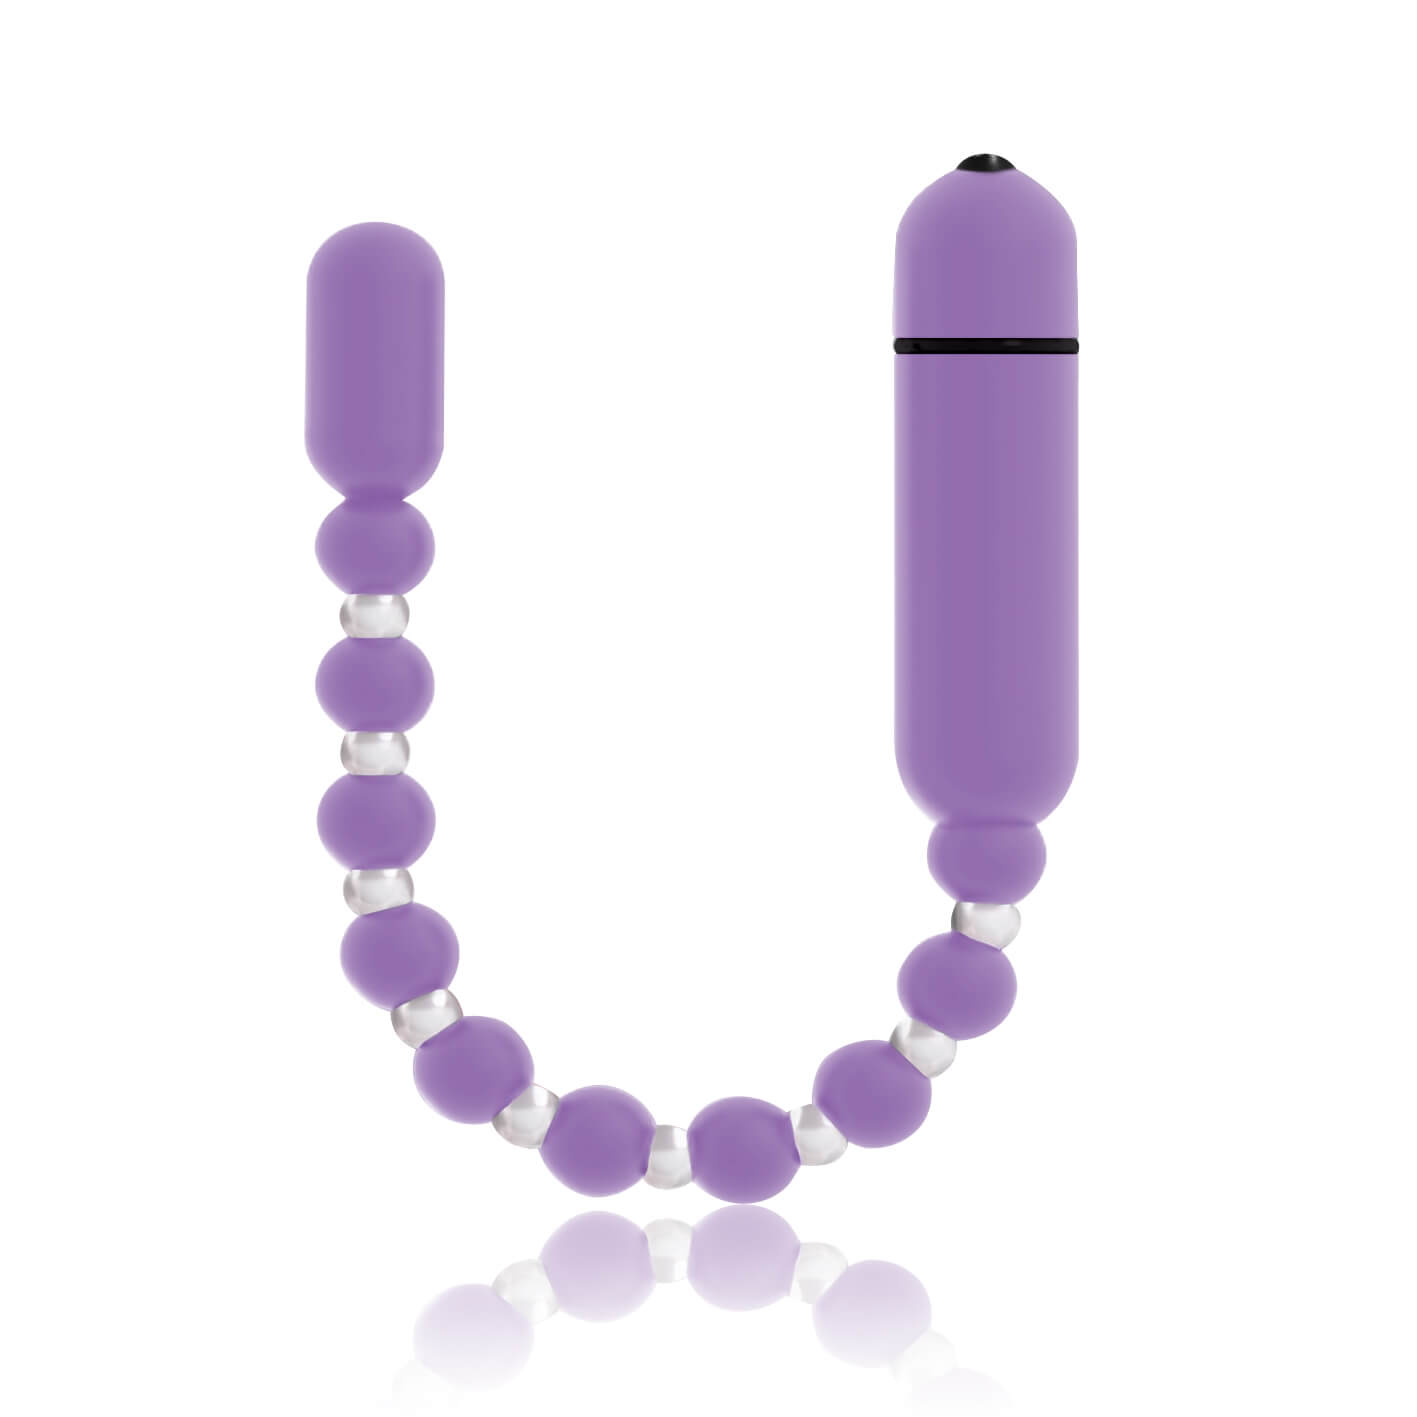 Booty Beads 2 - hajlítható, gyöngyös anál vibrátor (levendula) Análfüzérek, anál gyöngysorok kép